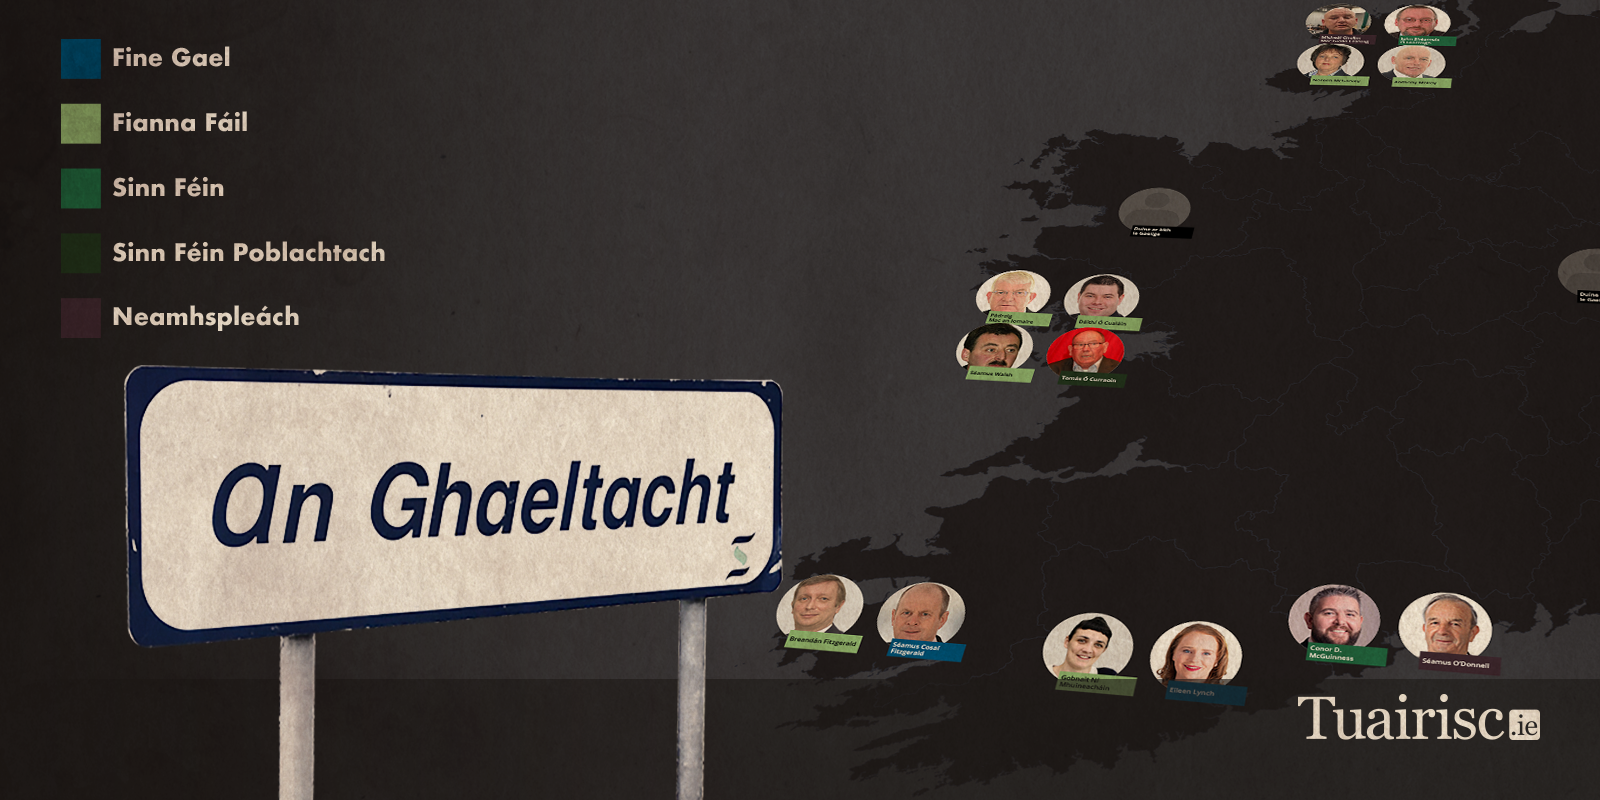 23% de chomhairleoirí sa Ghaeltacht atá ina gcainteoirí líofa Gaeilge